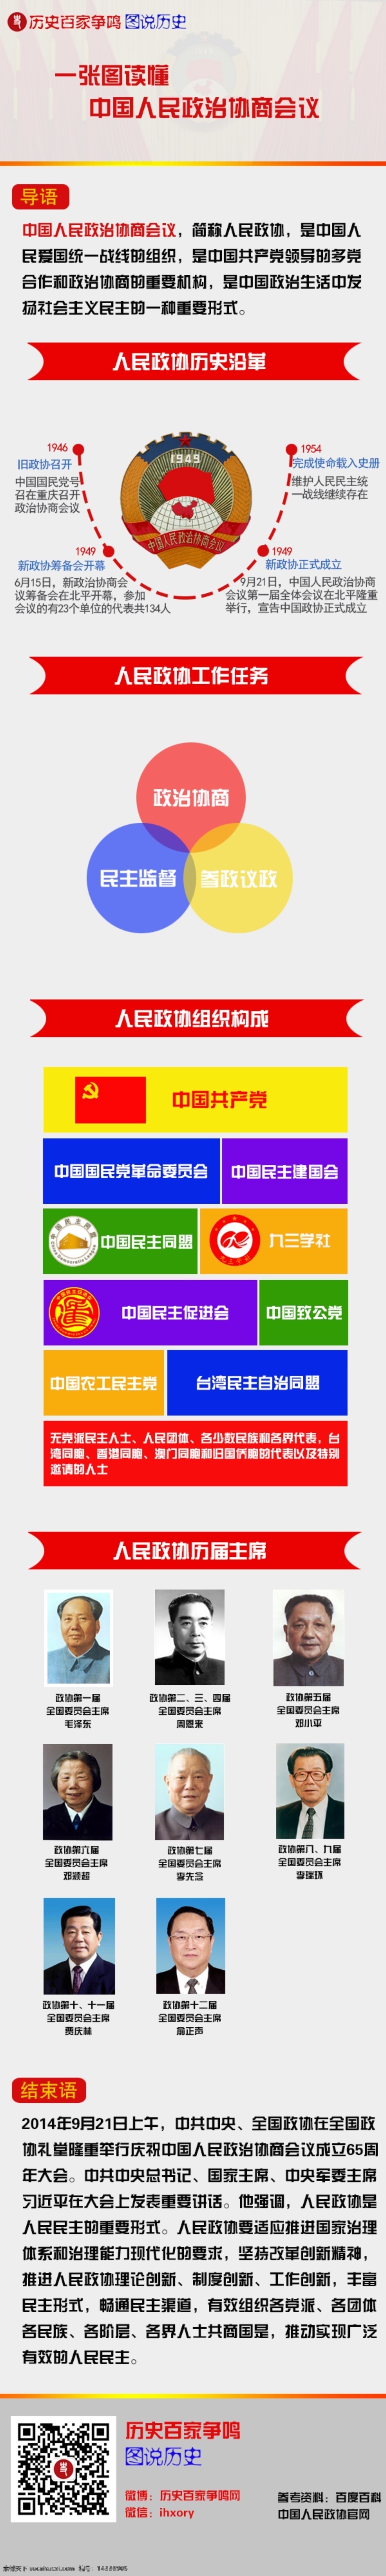 中国人民政治协商会议 信息图 展板 政治协商会议 原创设计 原创展板